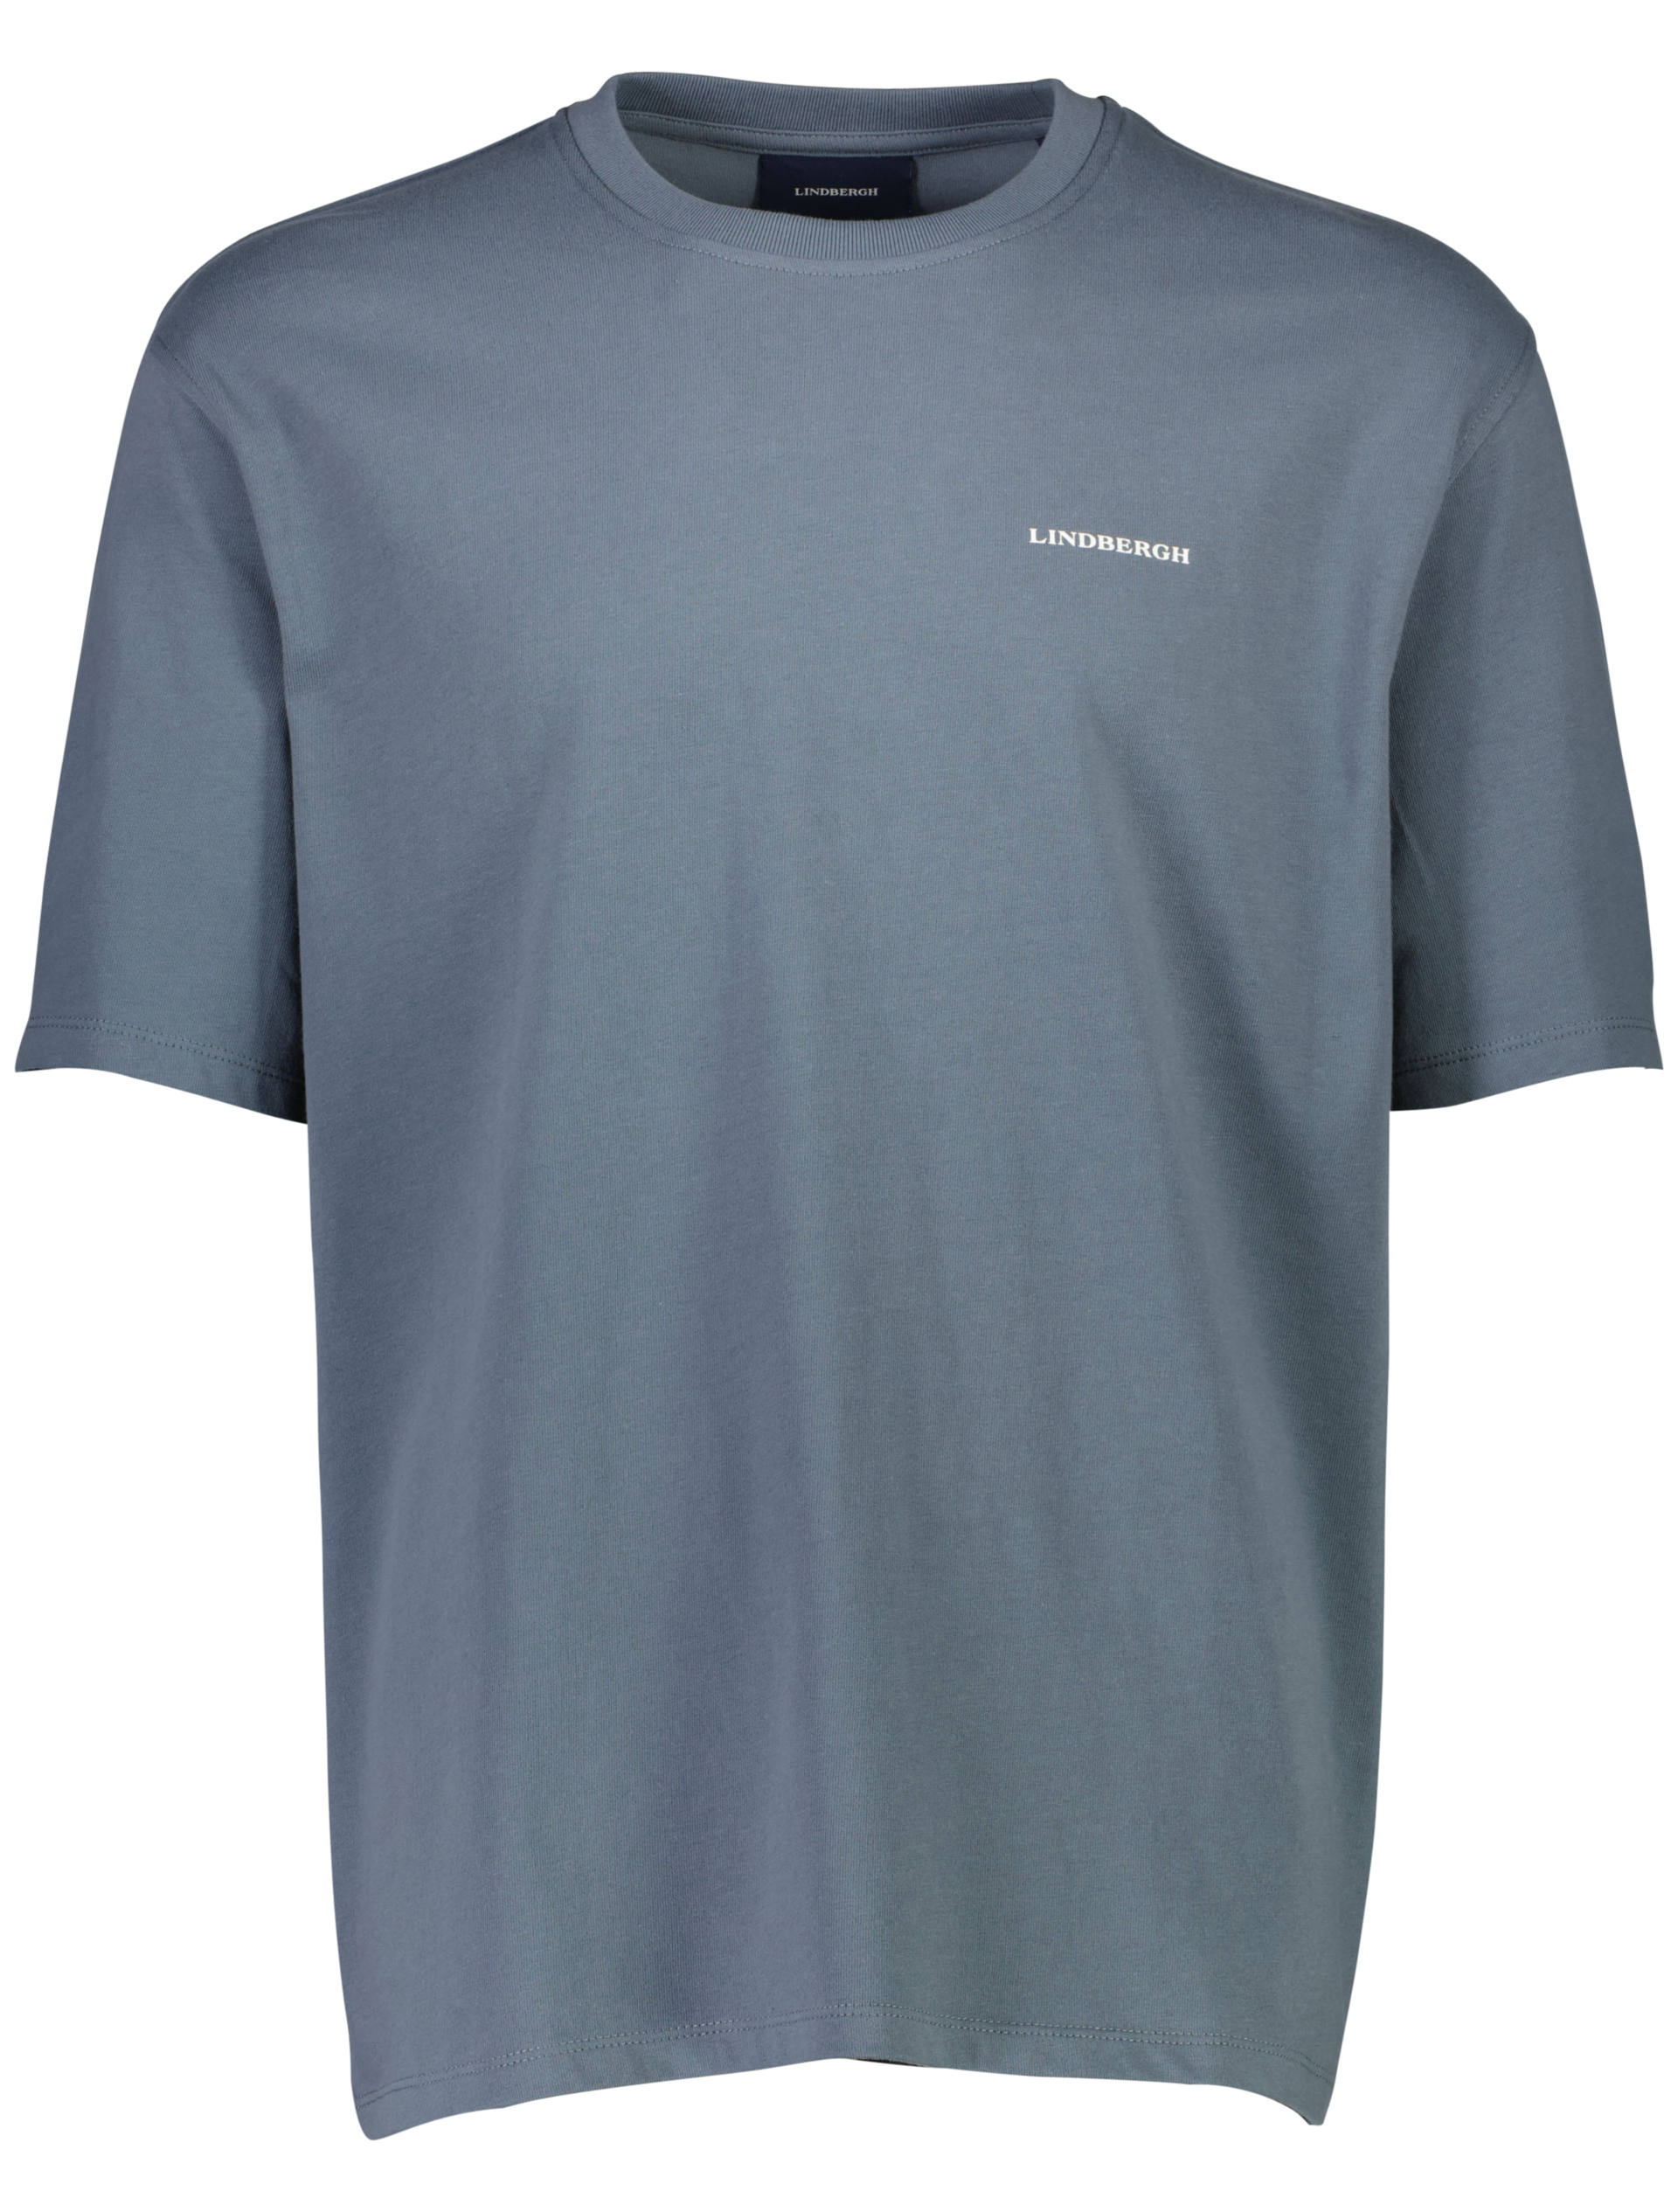 Lindbergh T-shirt blau / blue grey